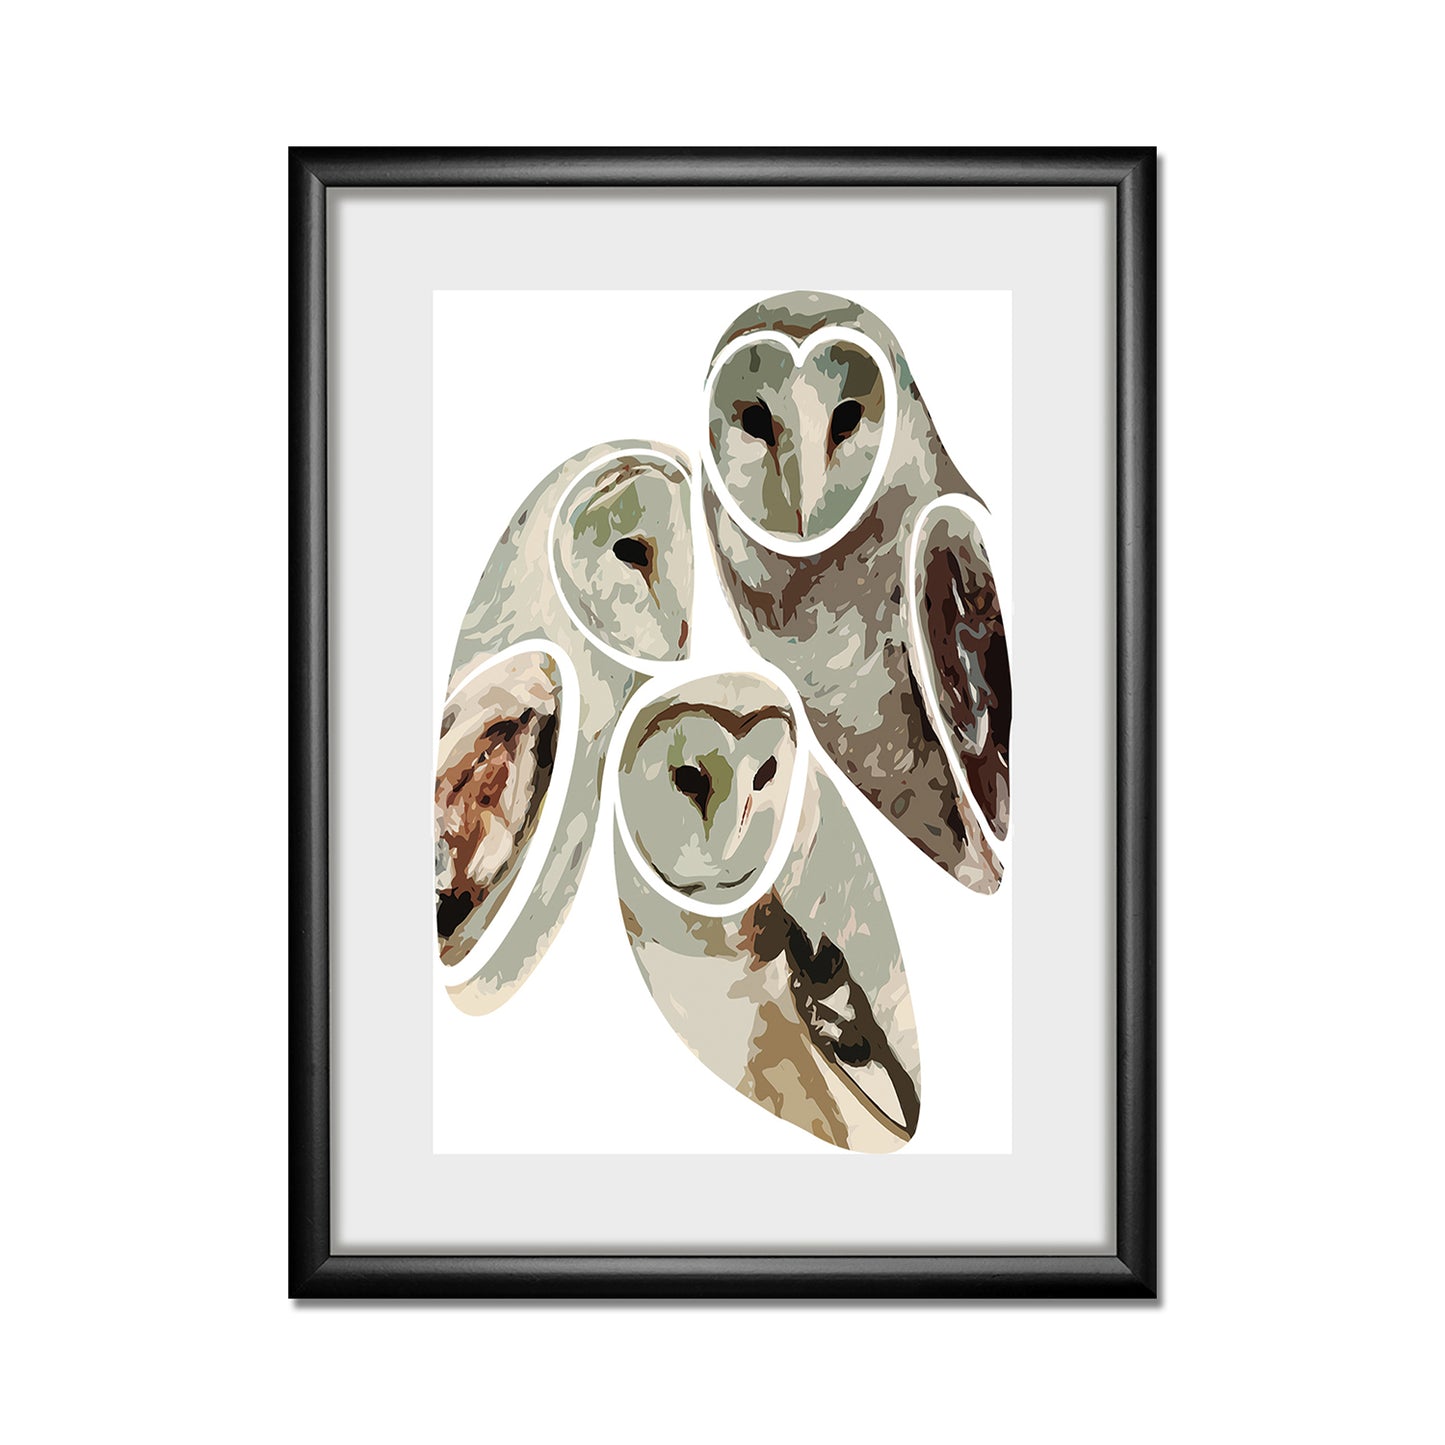 Rahmenbild - Curious Owls